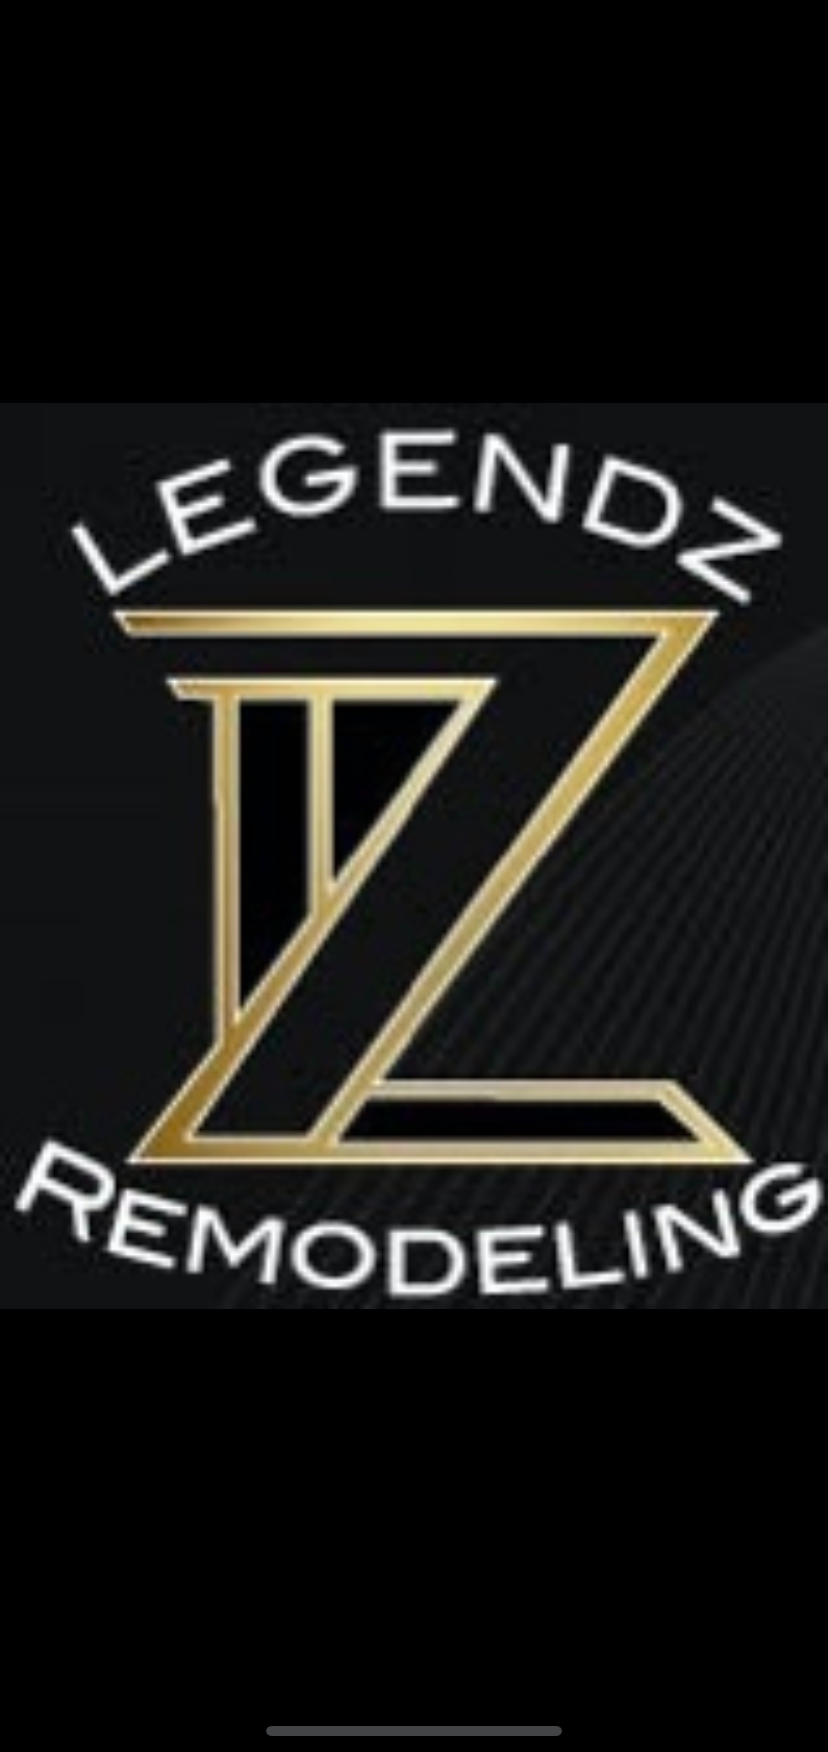 Legendz Remodeling, LLC Logo